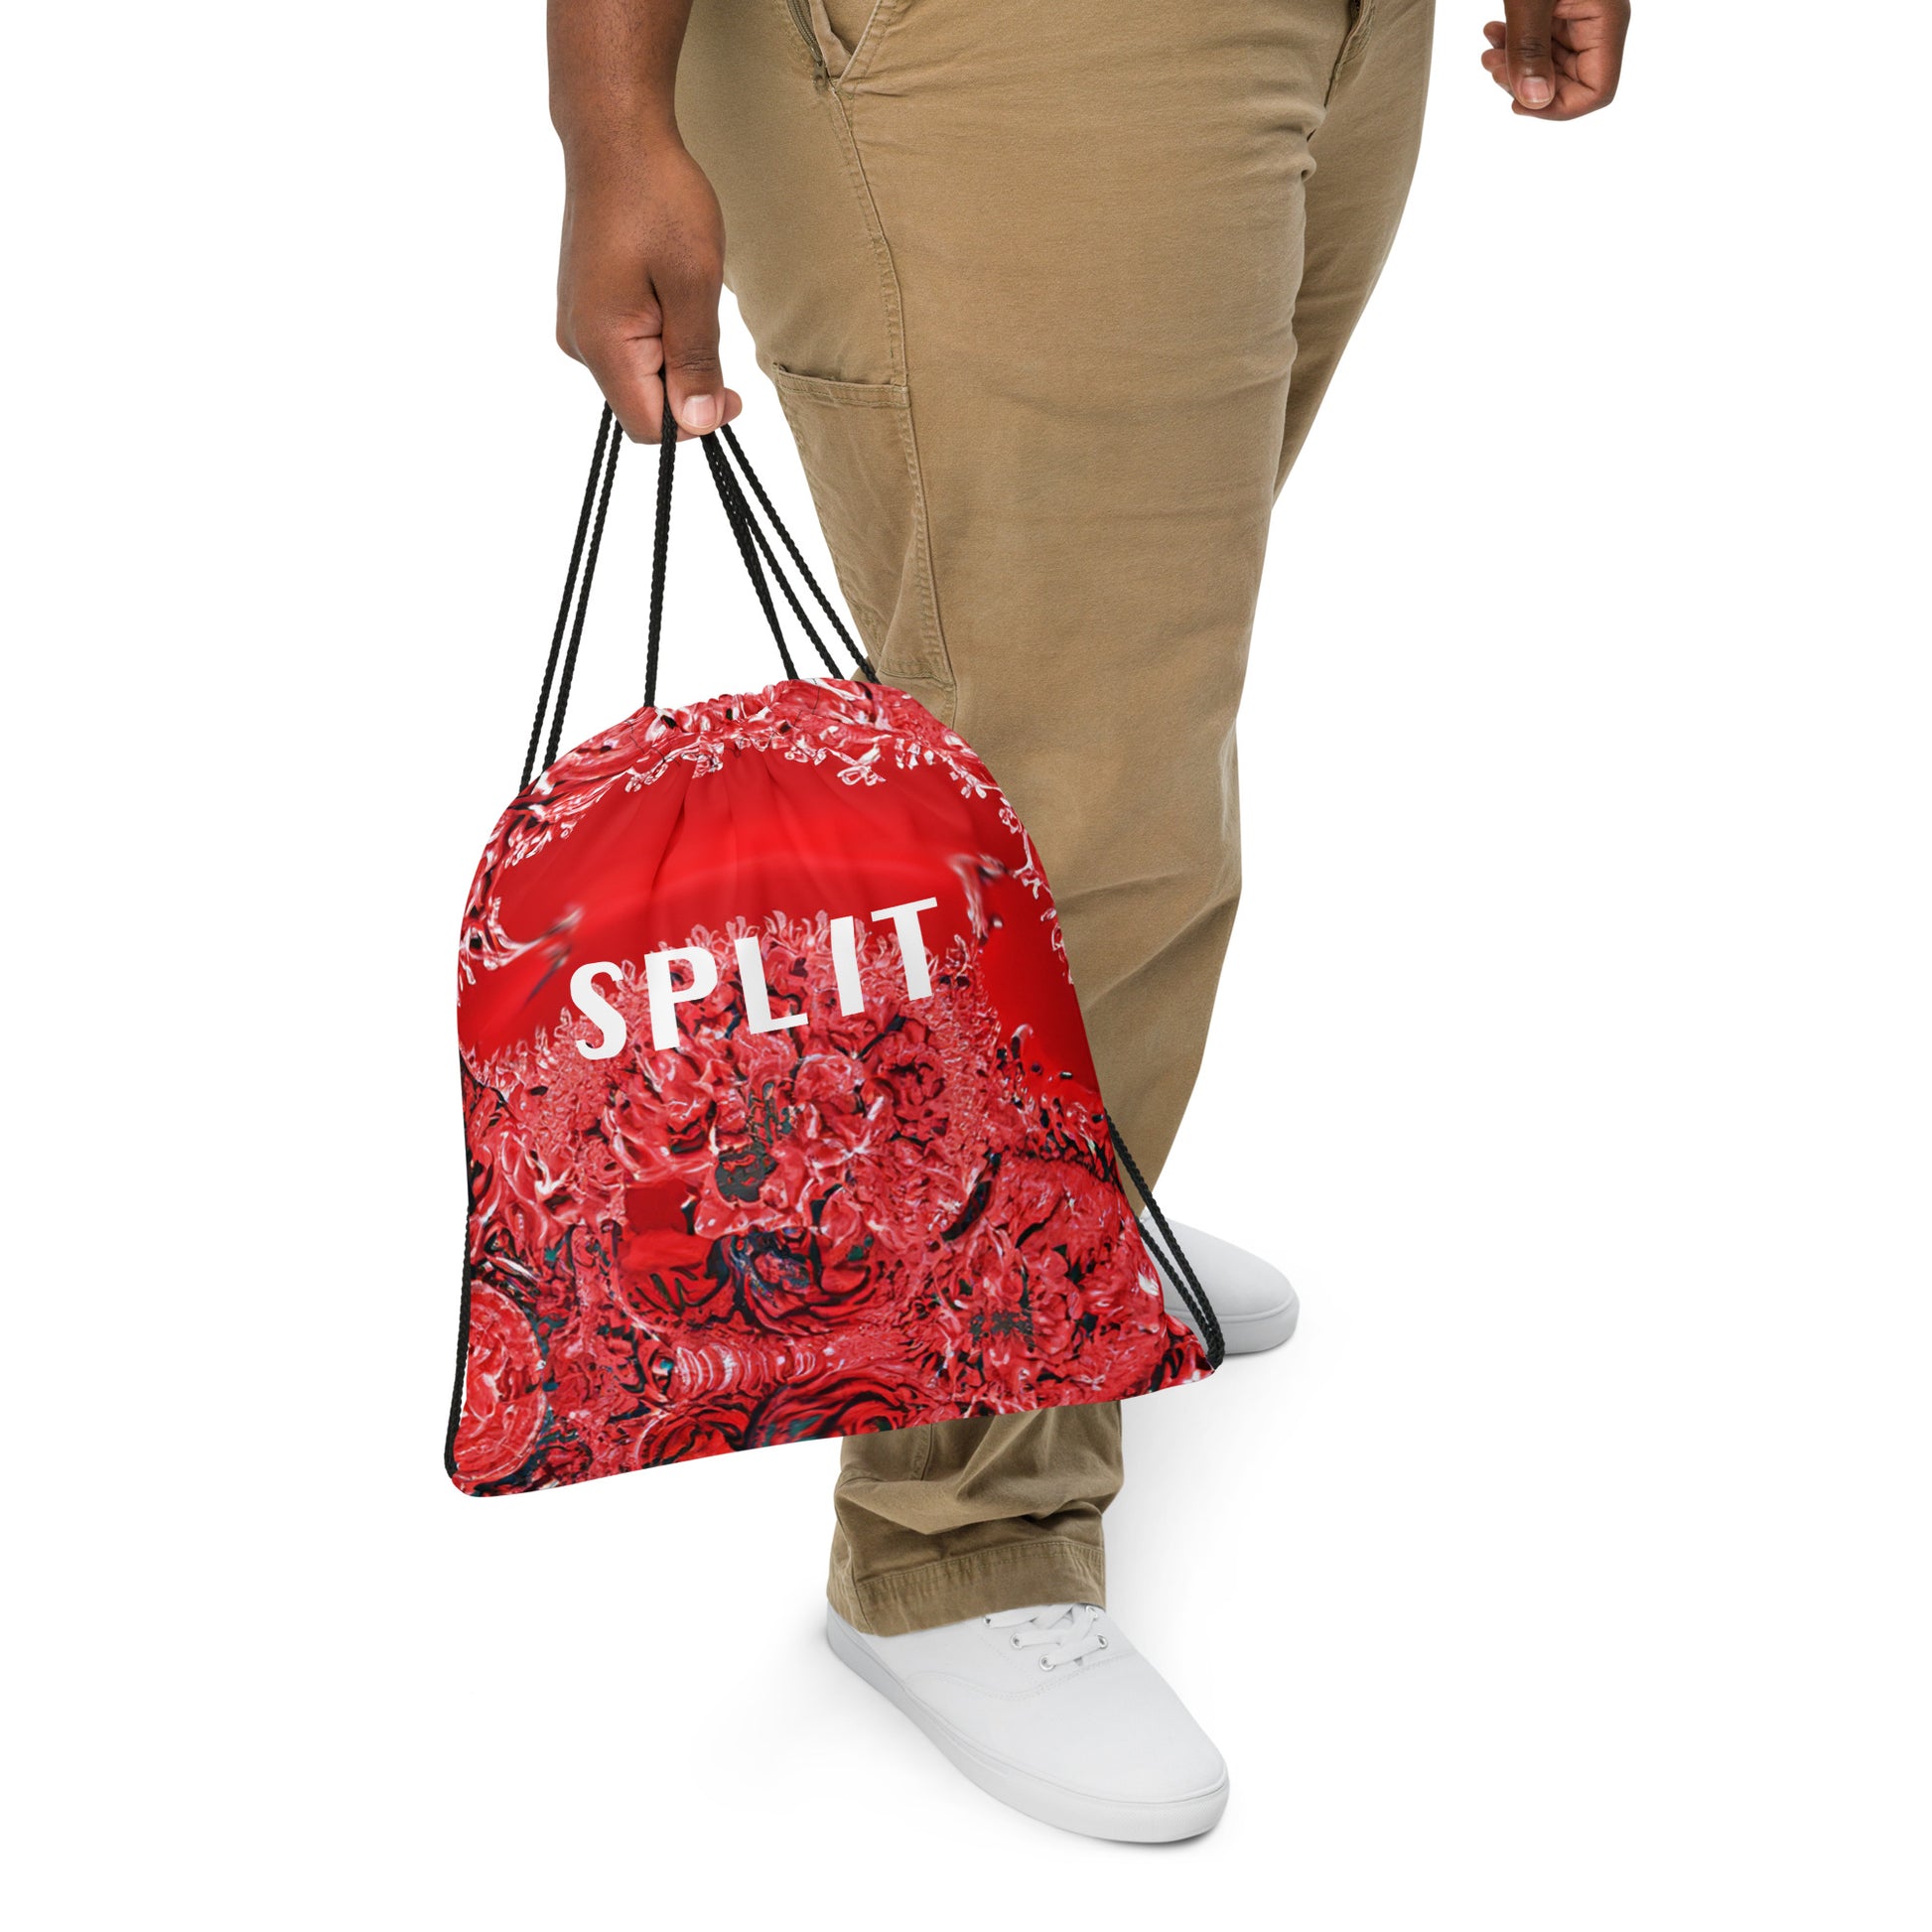 split bag - 1